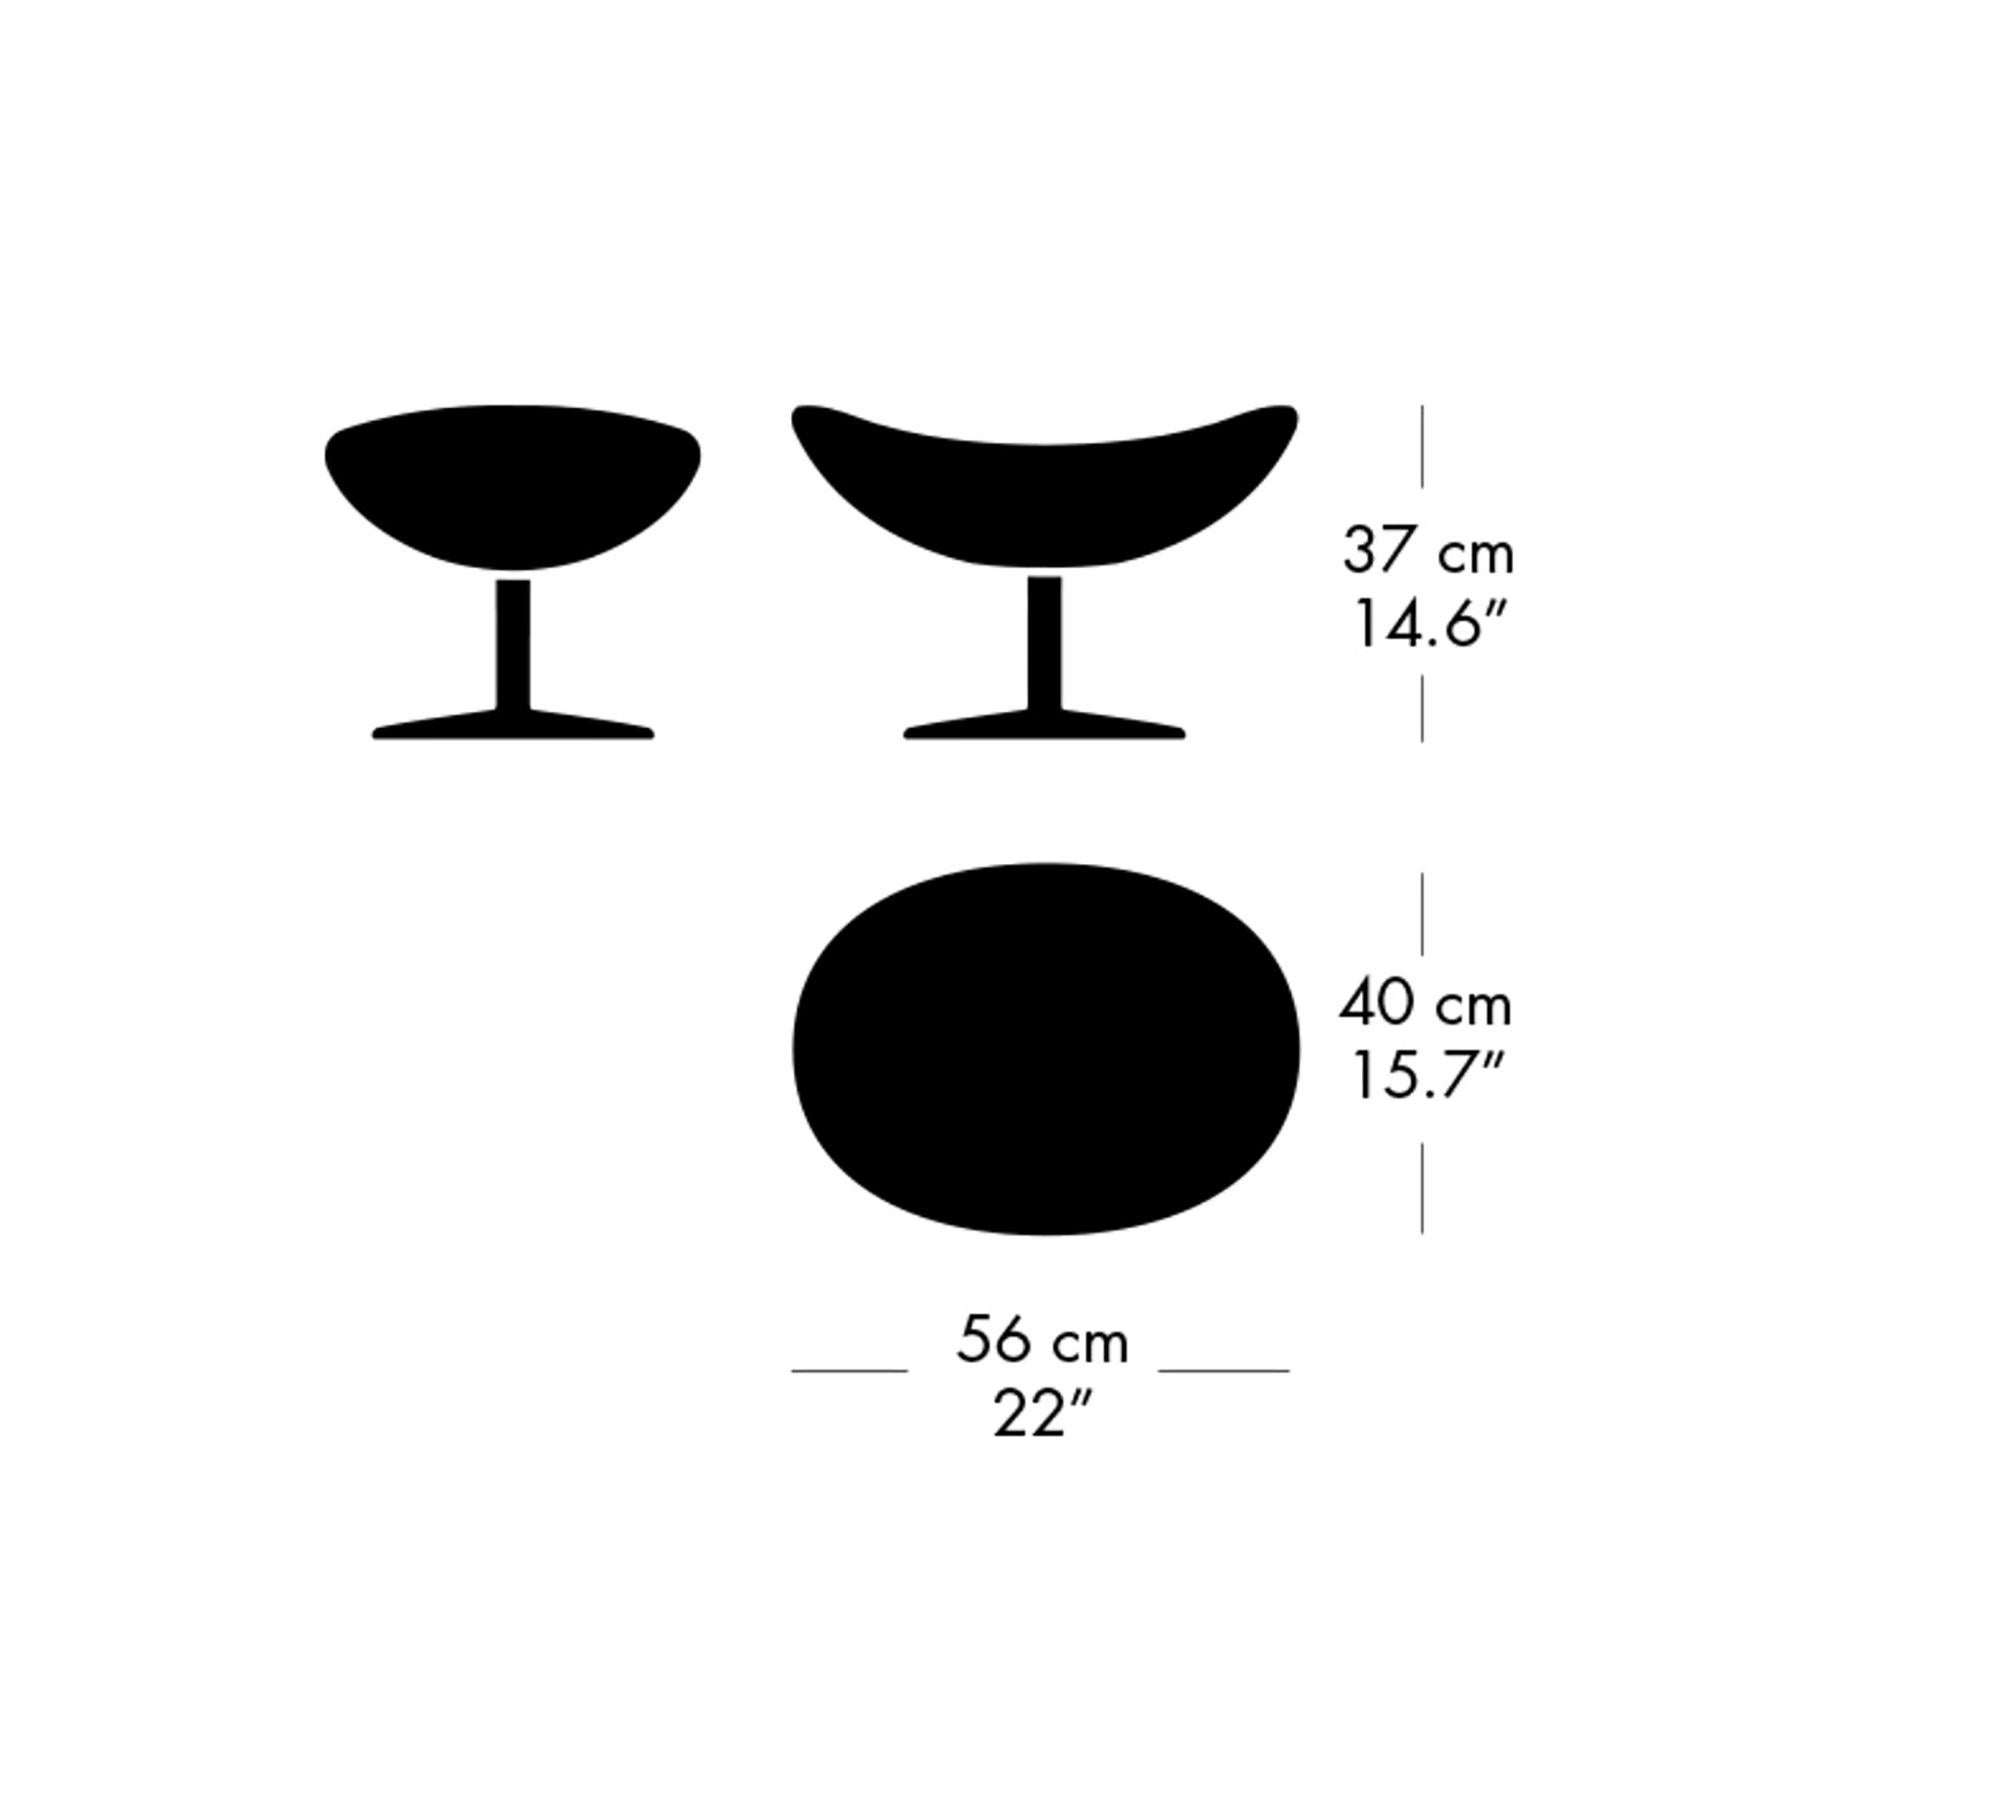 Arne Jacobsen 'Egg' Footstool for Fritz Hansen in Leather Upholstery (Cat. 3) For Sale 8